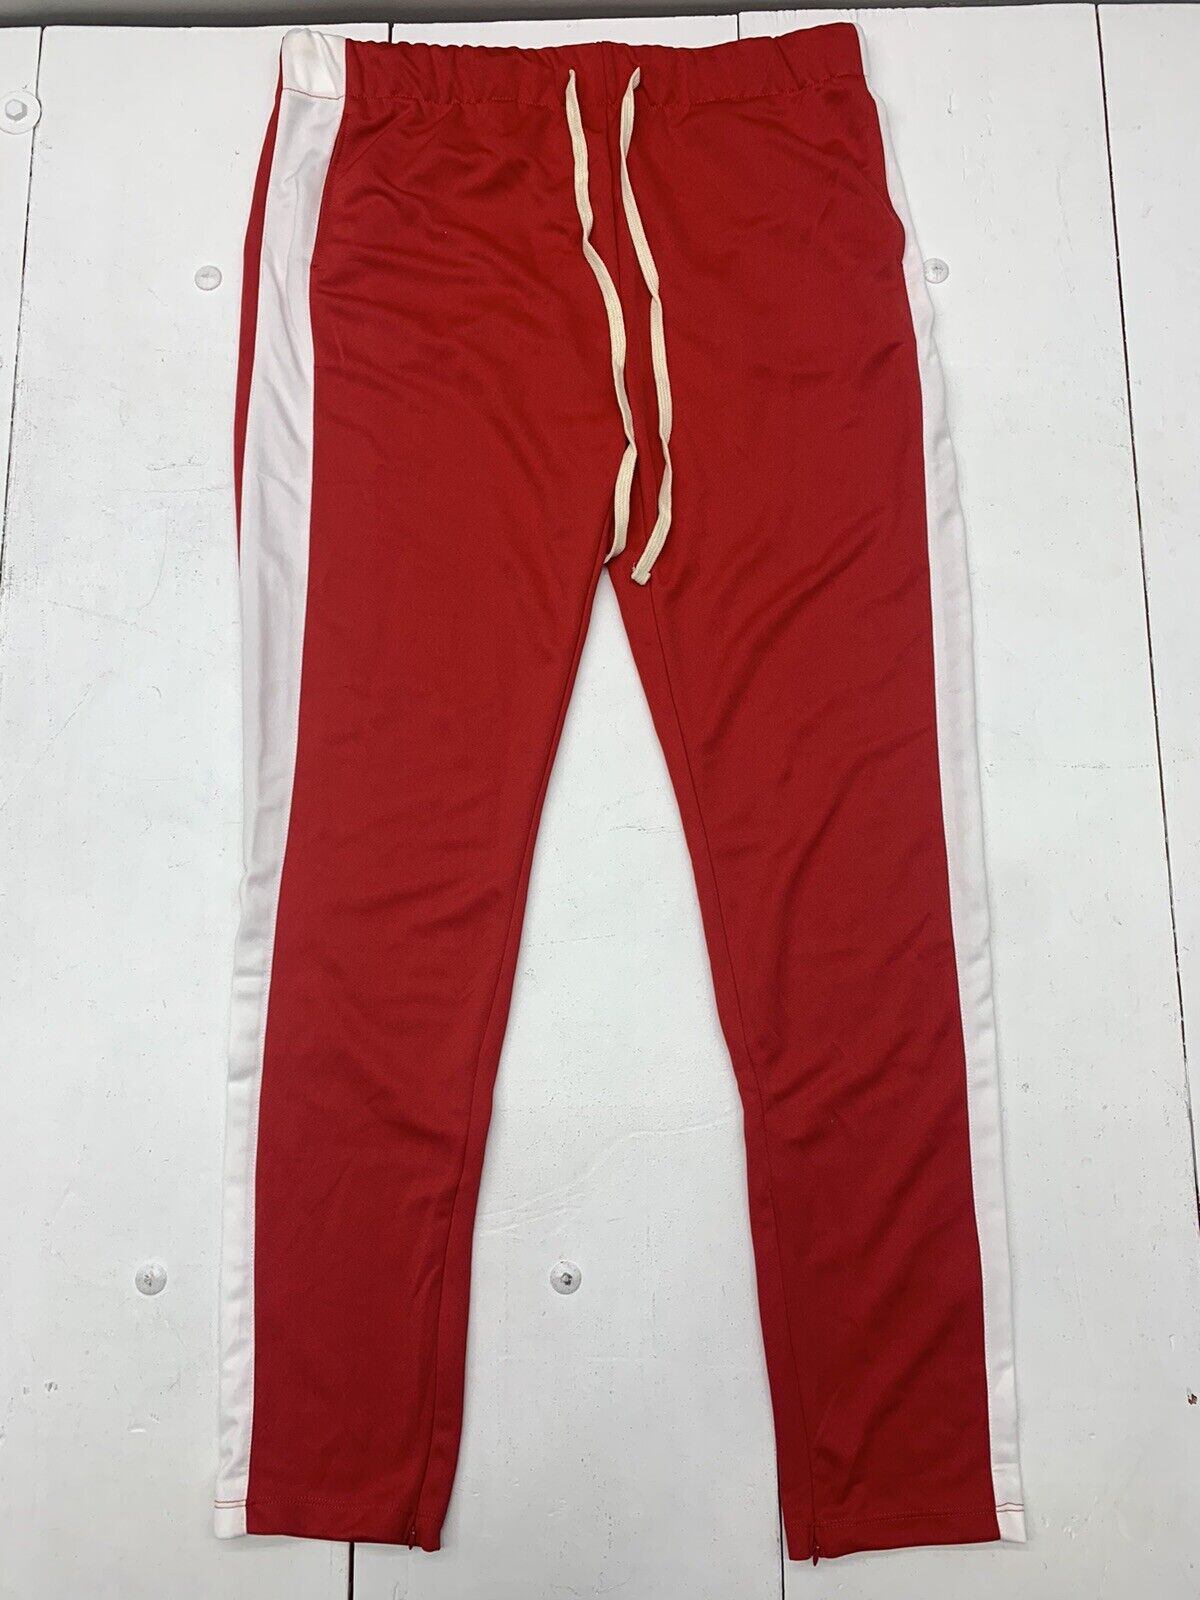 Buy J B Fashion Track Pant for Men || Track Pants || Full Elastic Jogger Track  Pant (TP-06-08) Online at desertcartINDIA